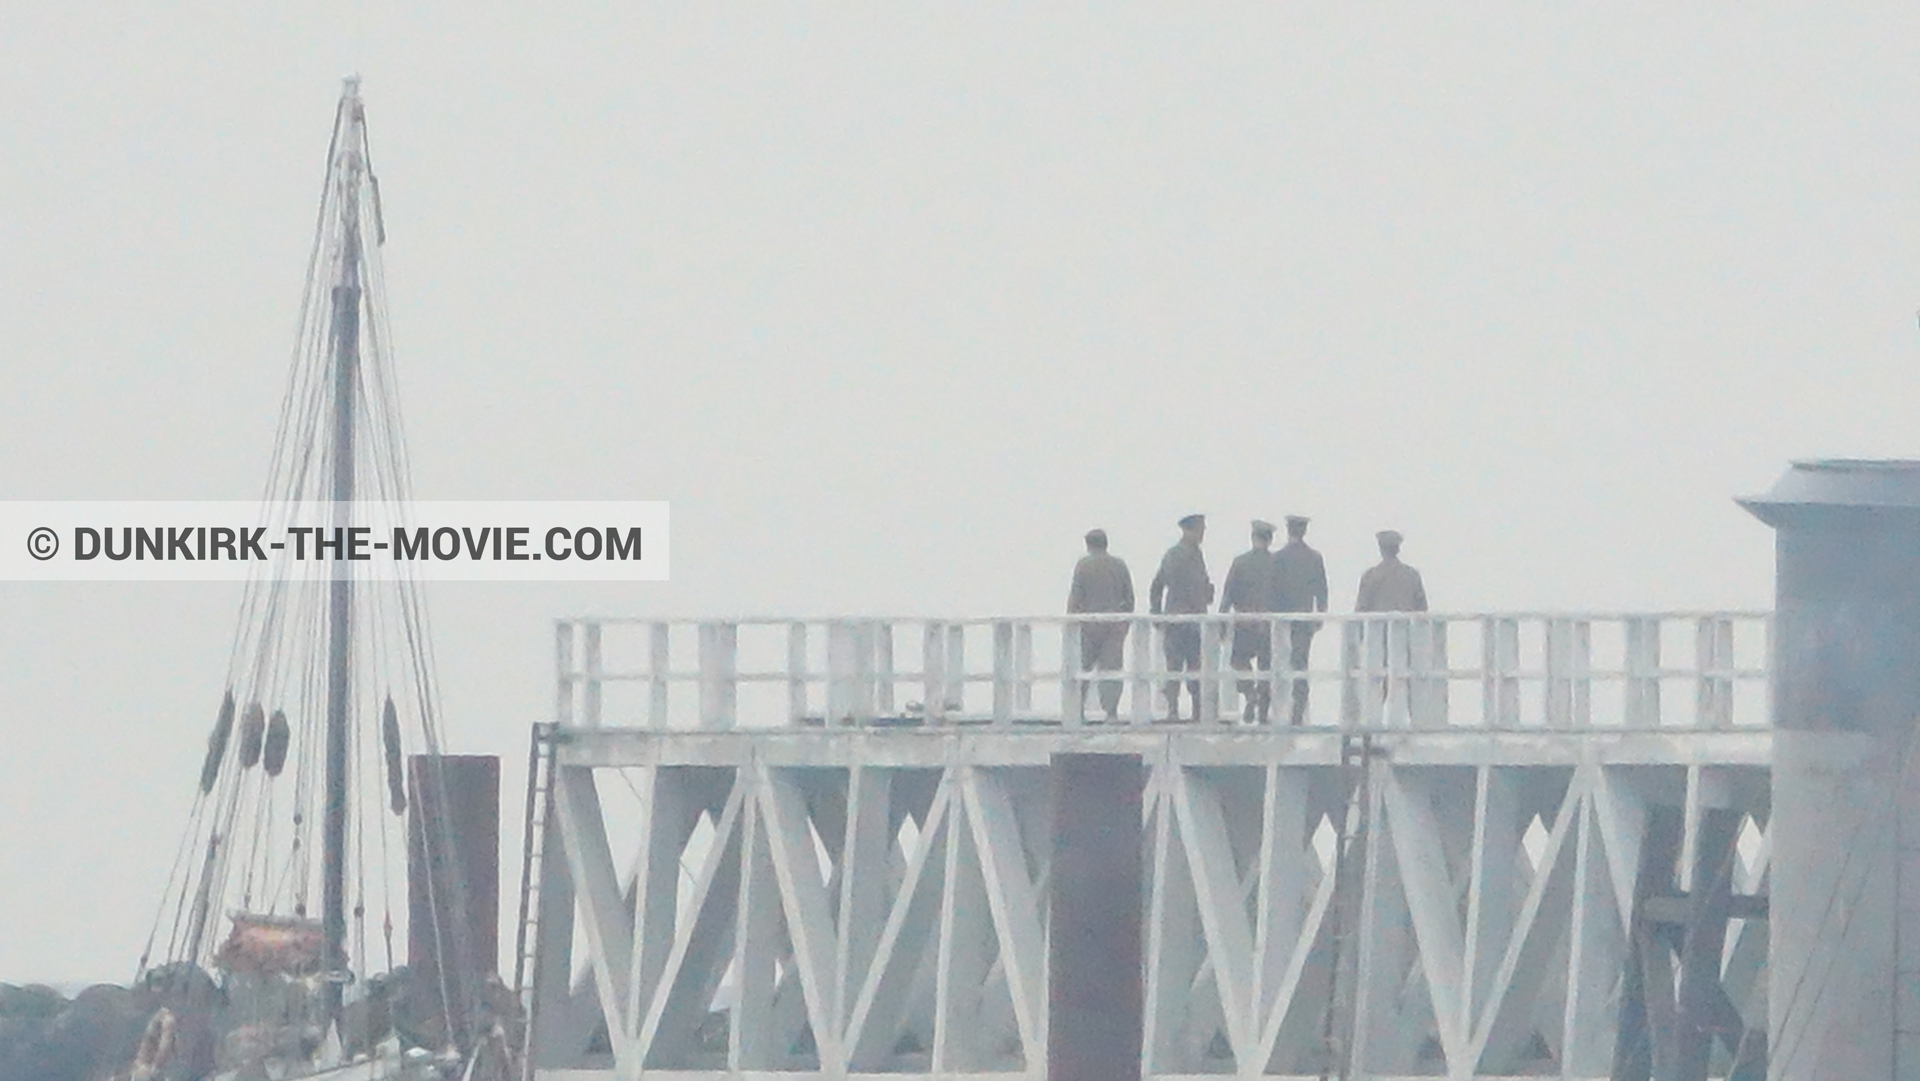 Fotos con actor, cielo gris, decoración, muelle del ESTE,  durante el rodaje de la película Dunkerque de Nolan